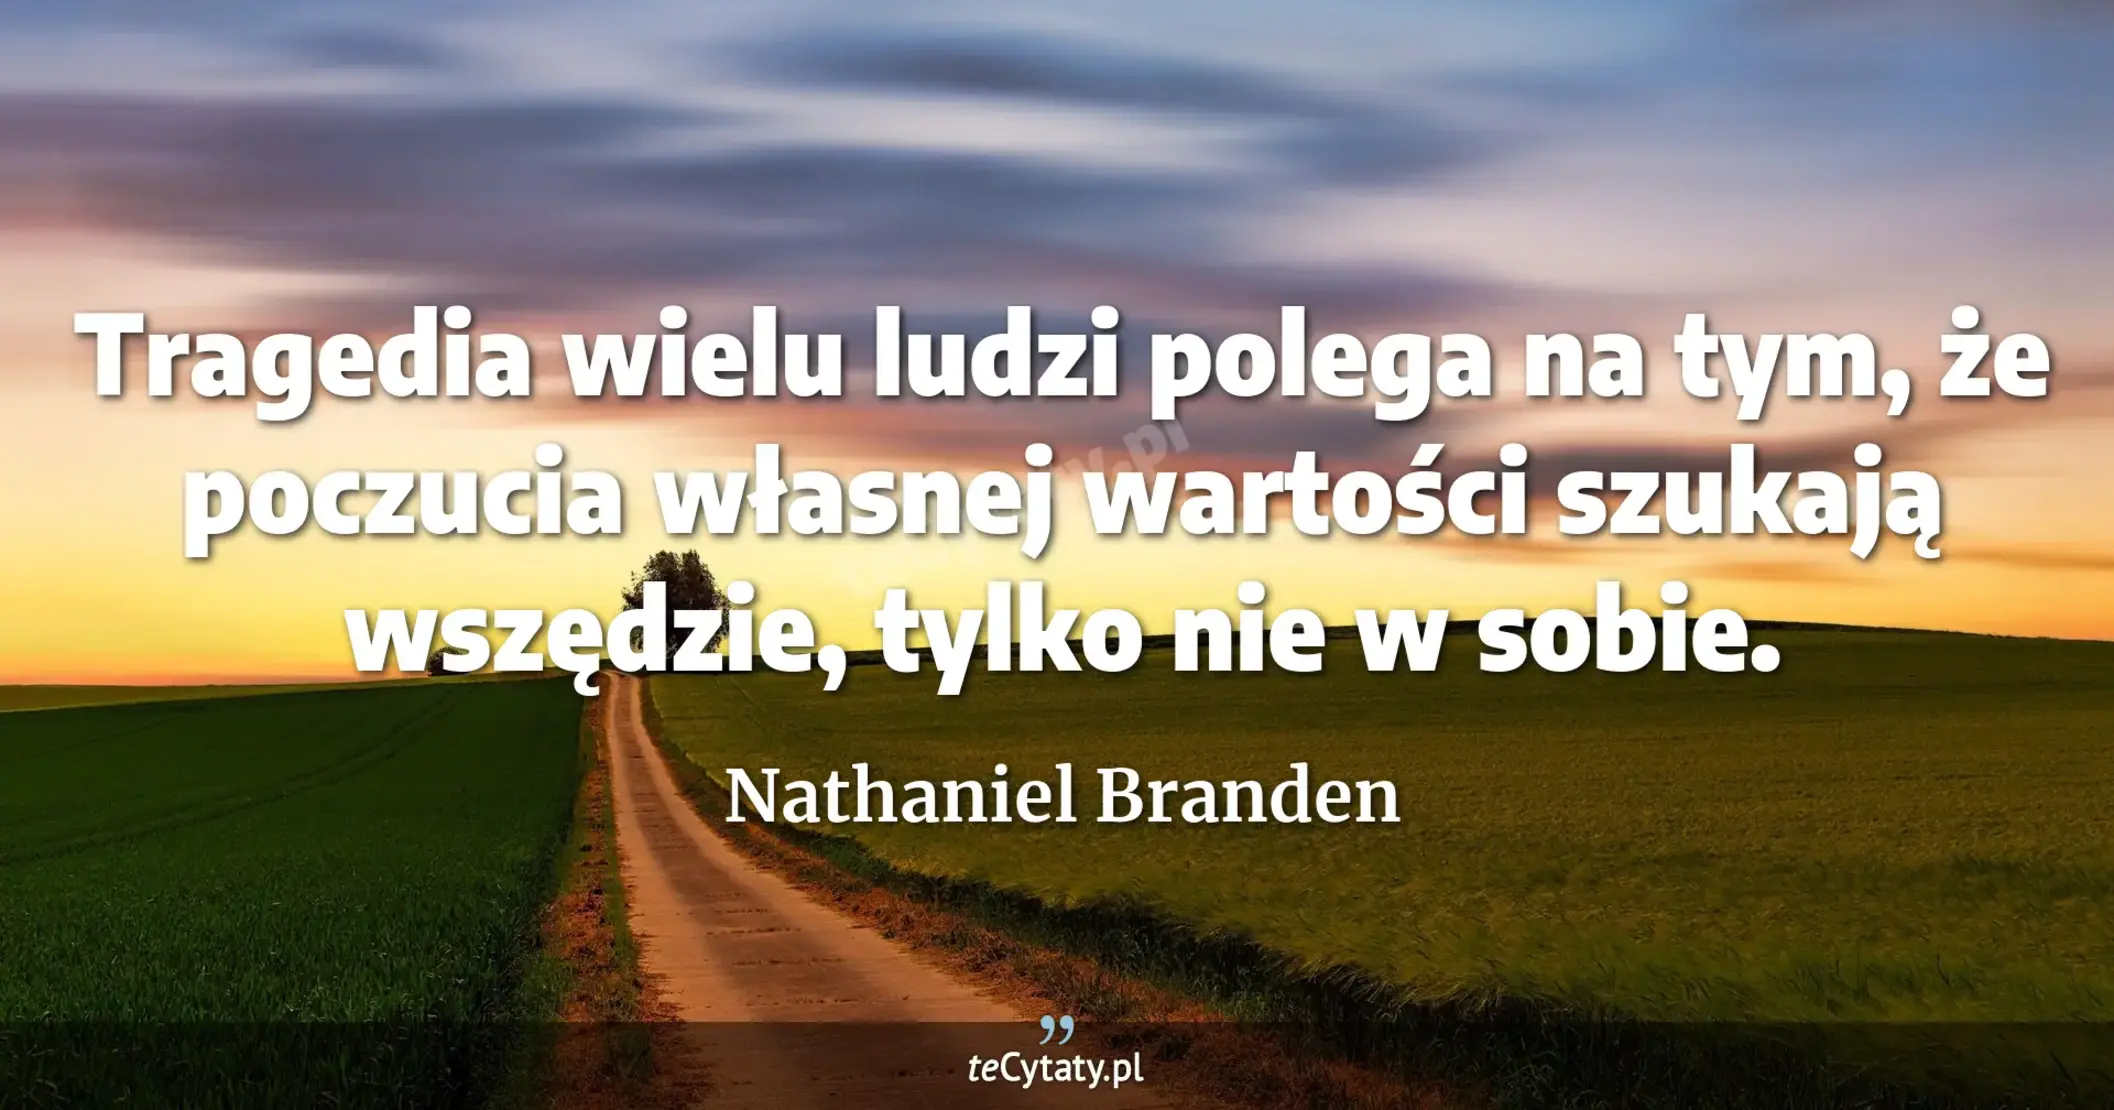 Tragedia wielu ludzi polega na tym, że poczucia własnej wartości szukają wszędzie, tylko nie w sobie. - Nathaniel Branden